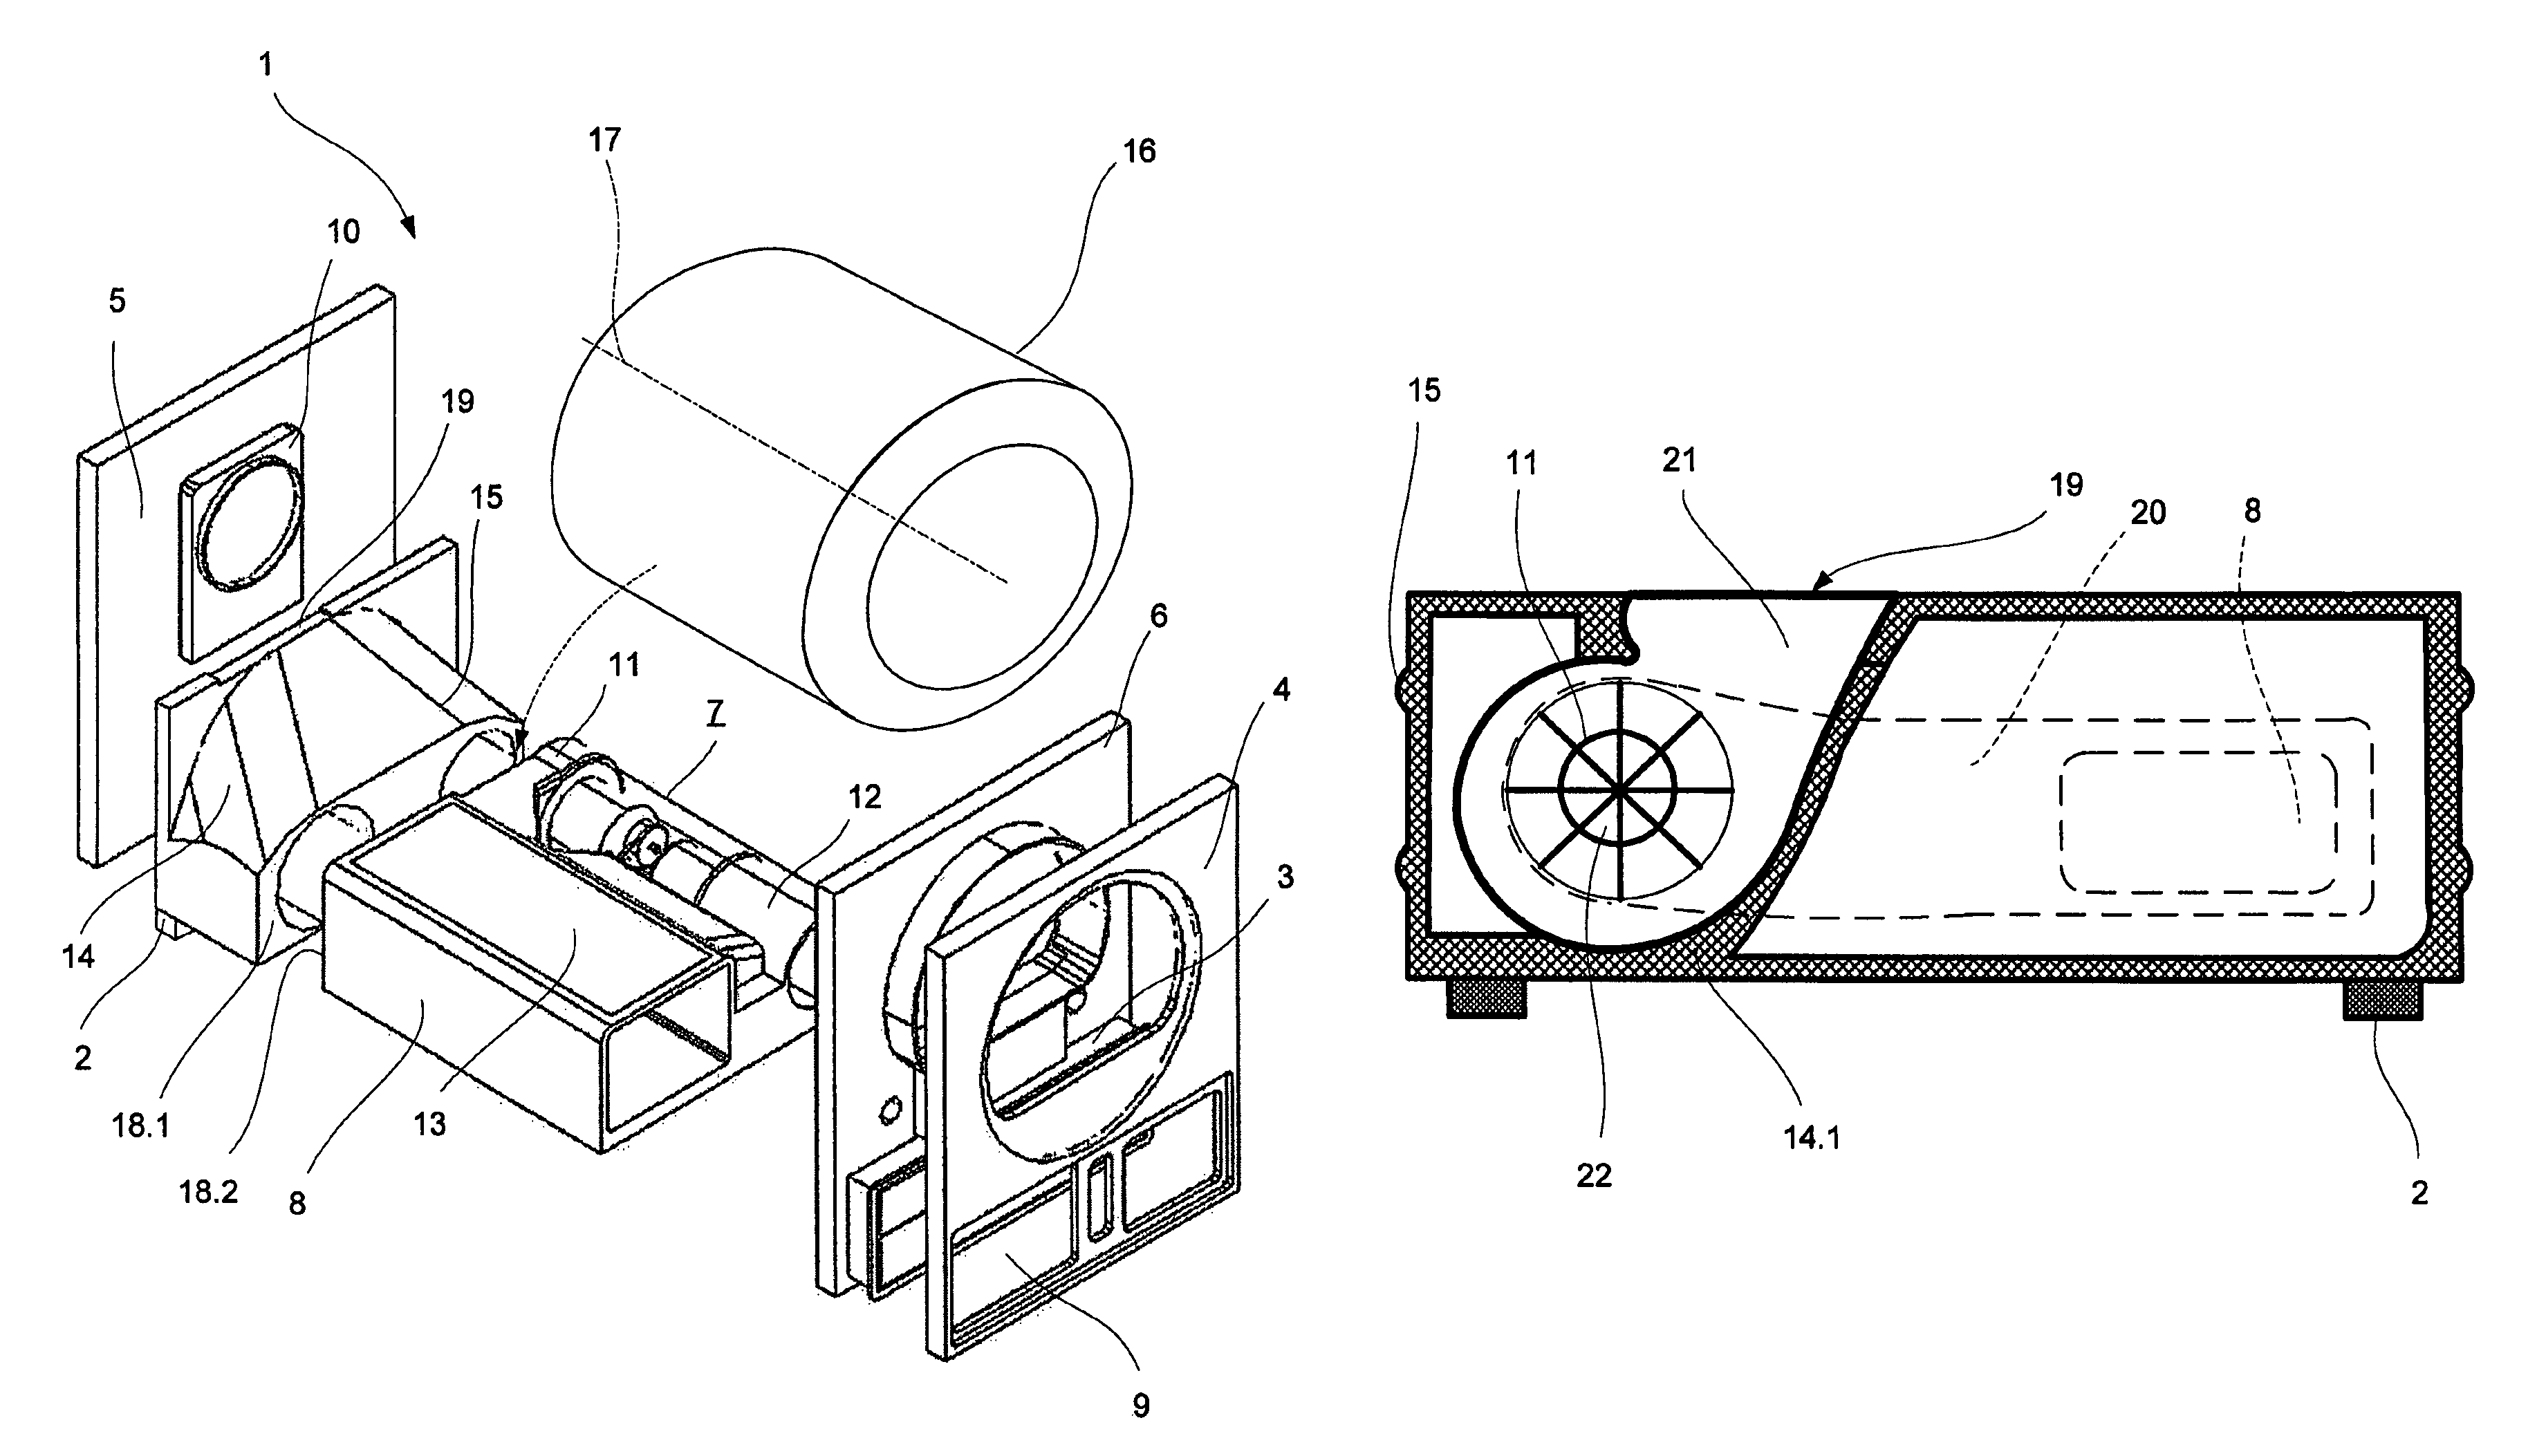 Condensation type laundry dryer